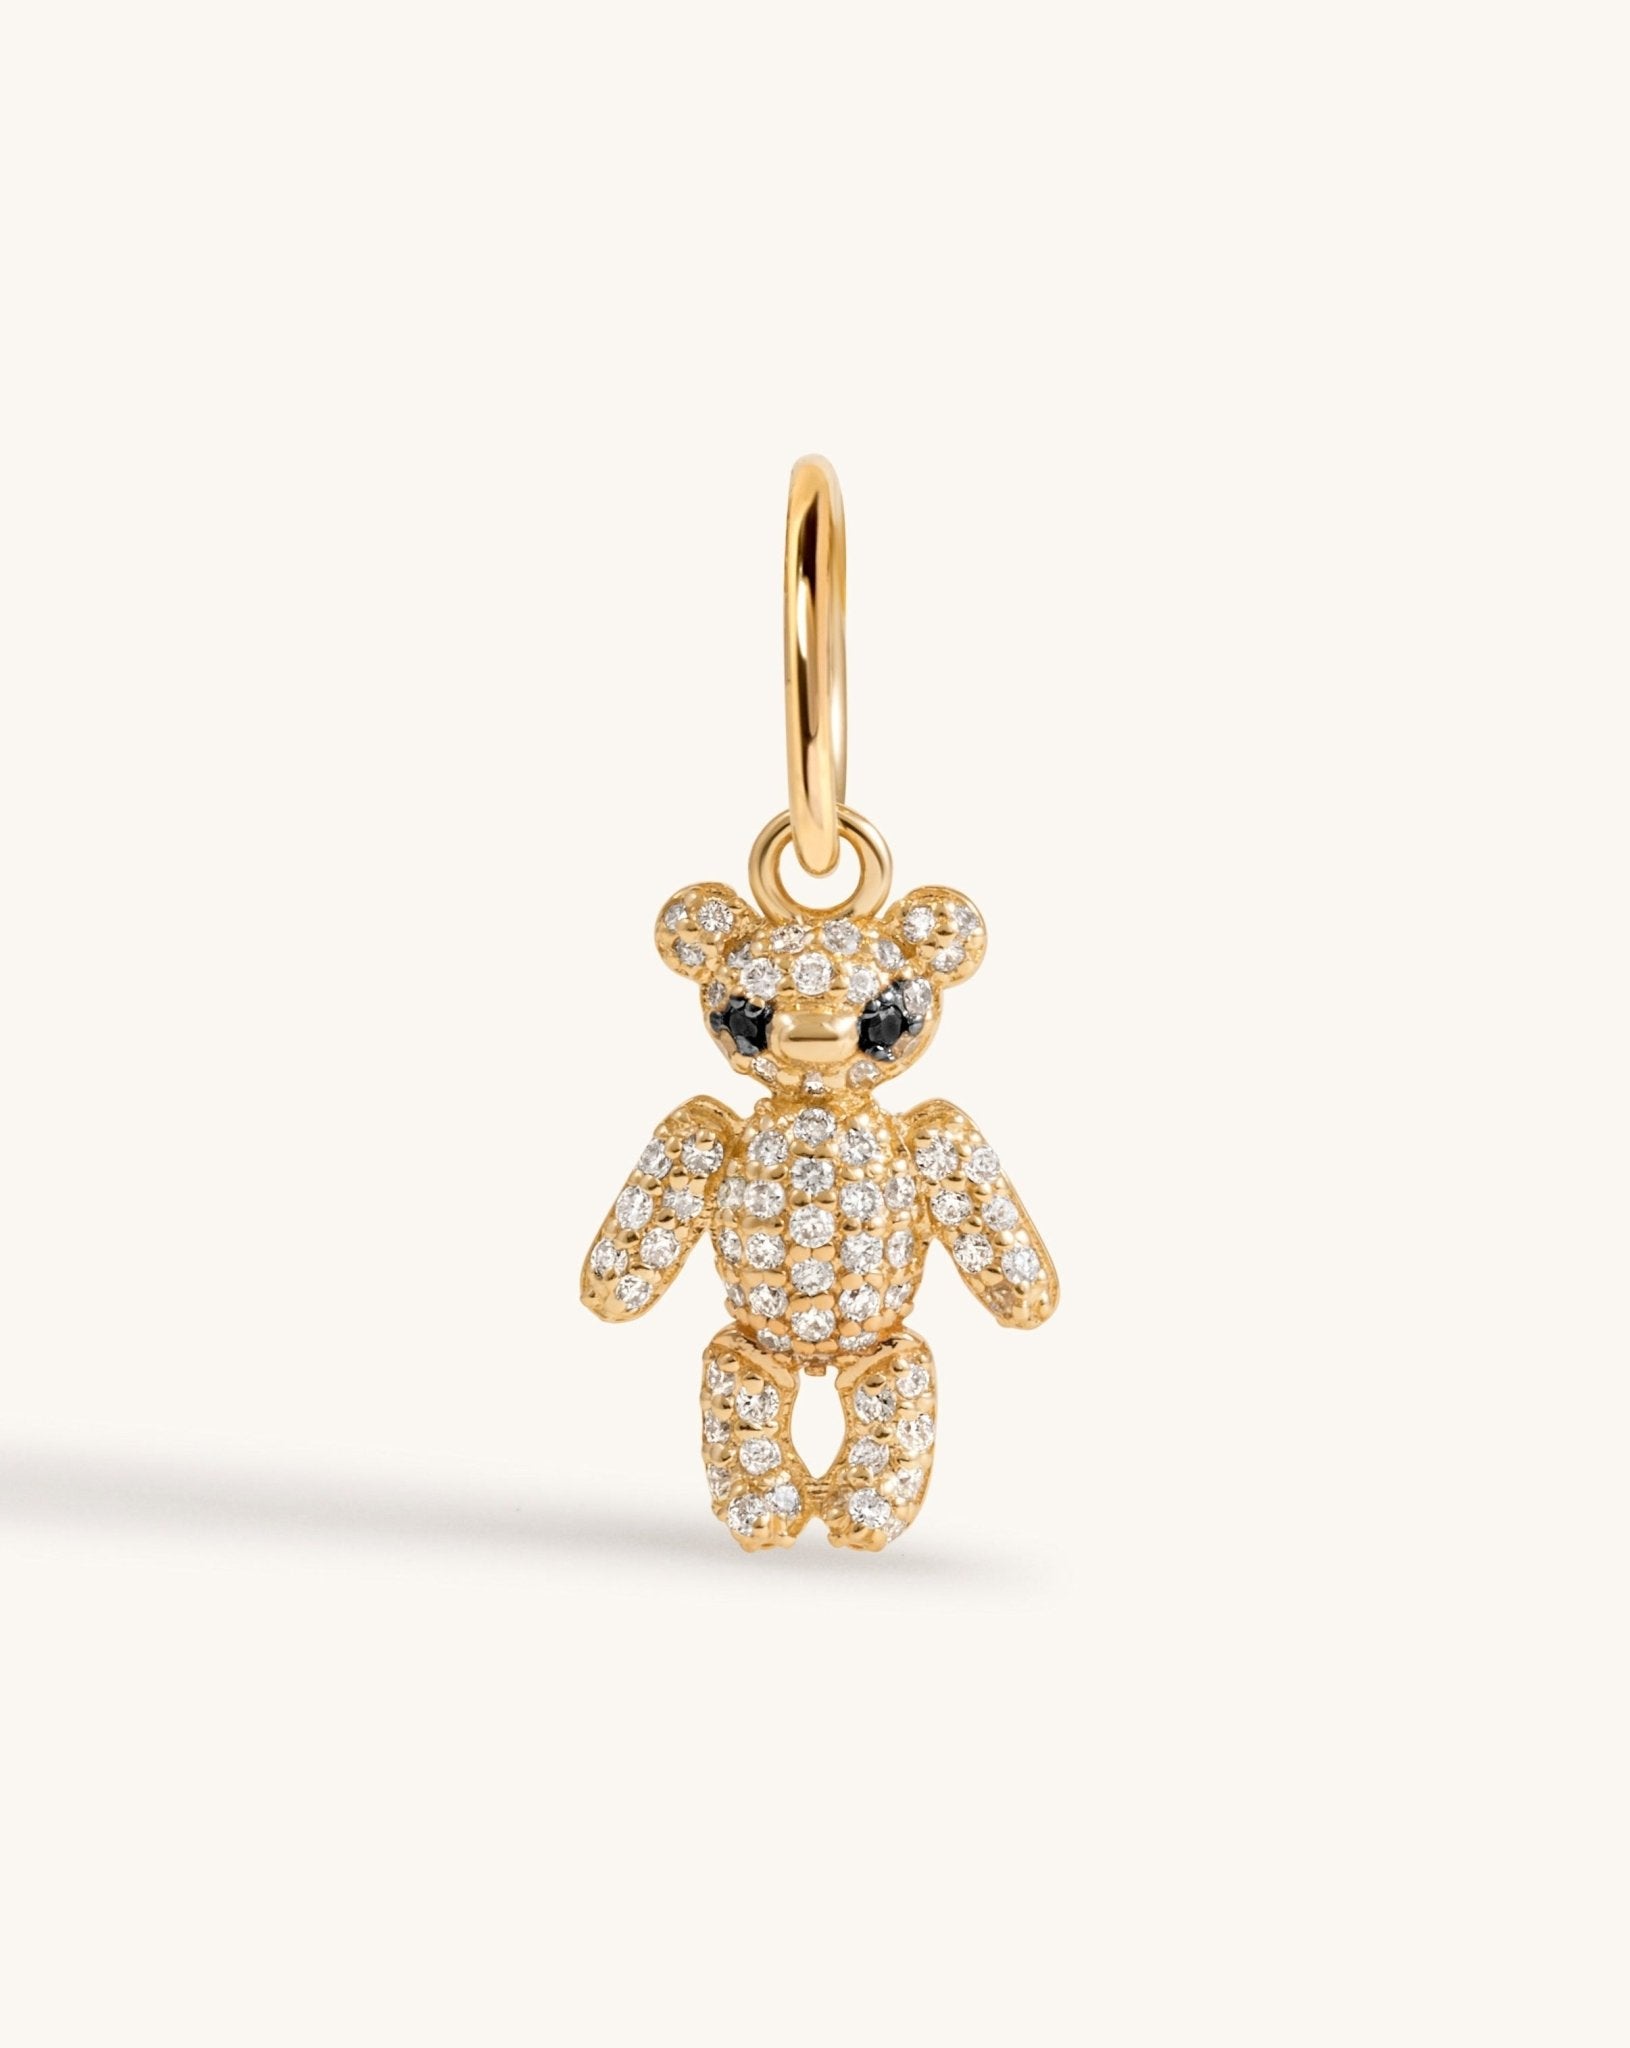 Diamond Teddy Bear Necklace Charm - Sparkle Society